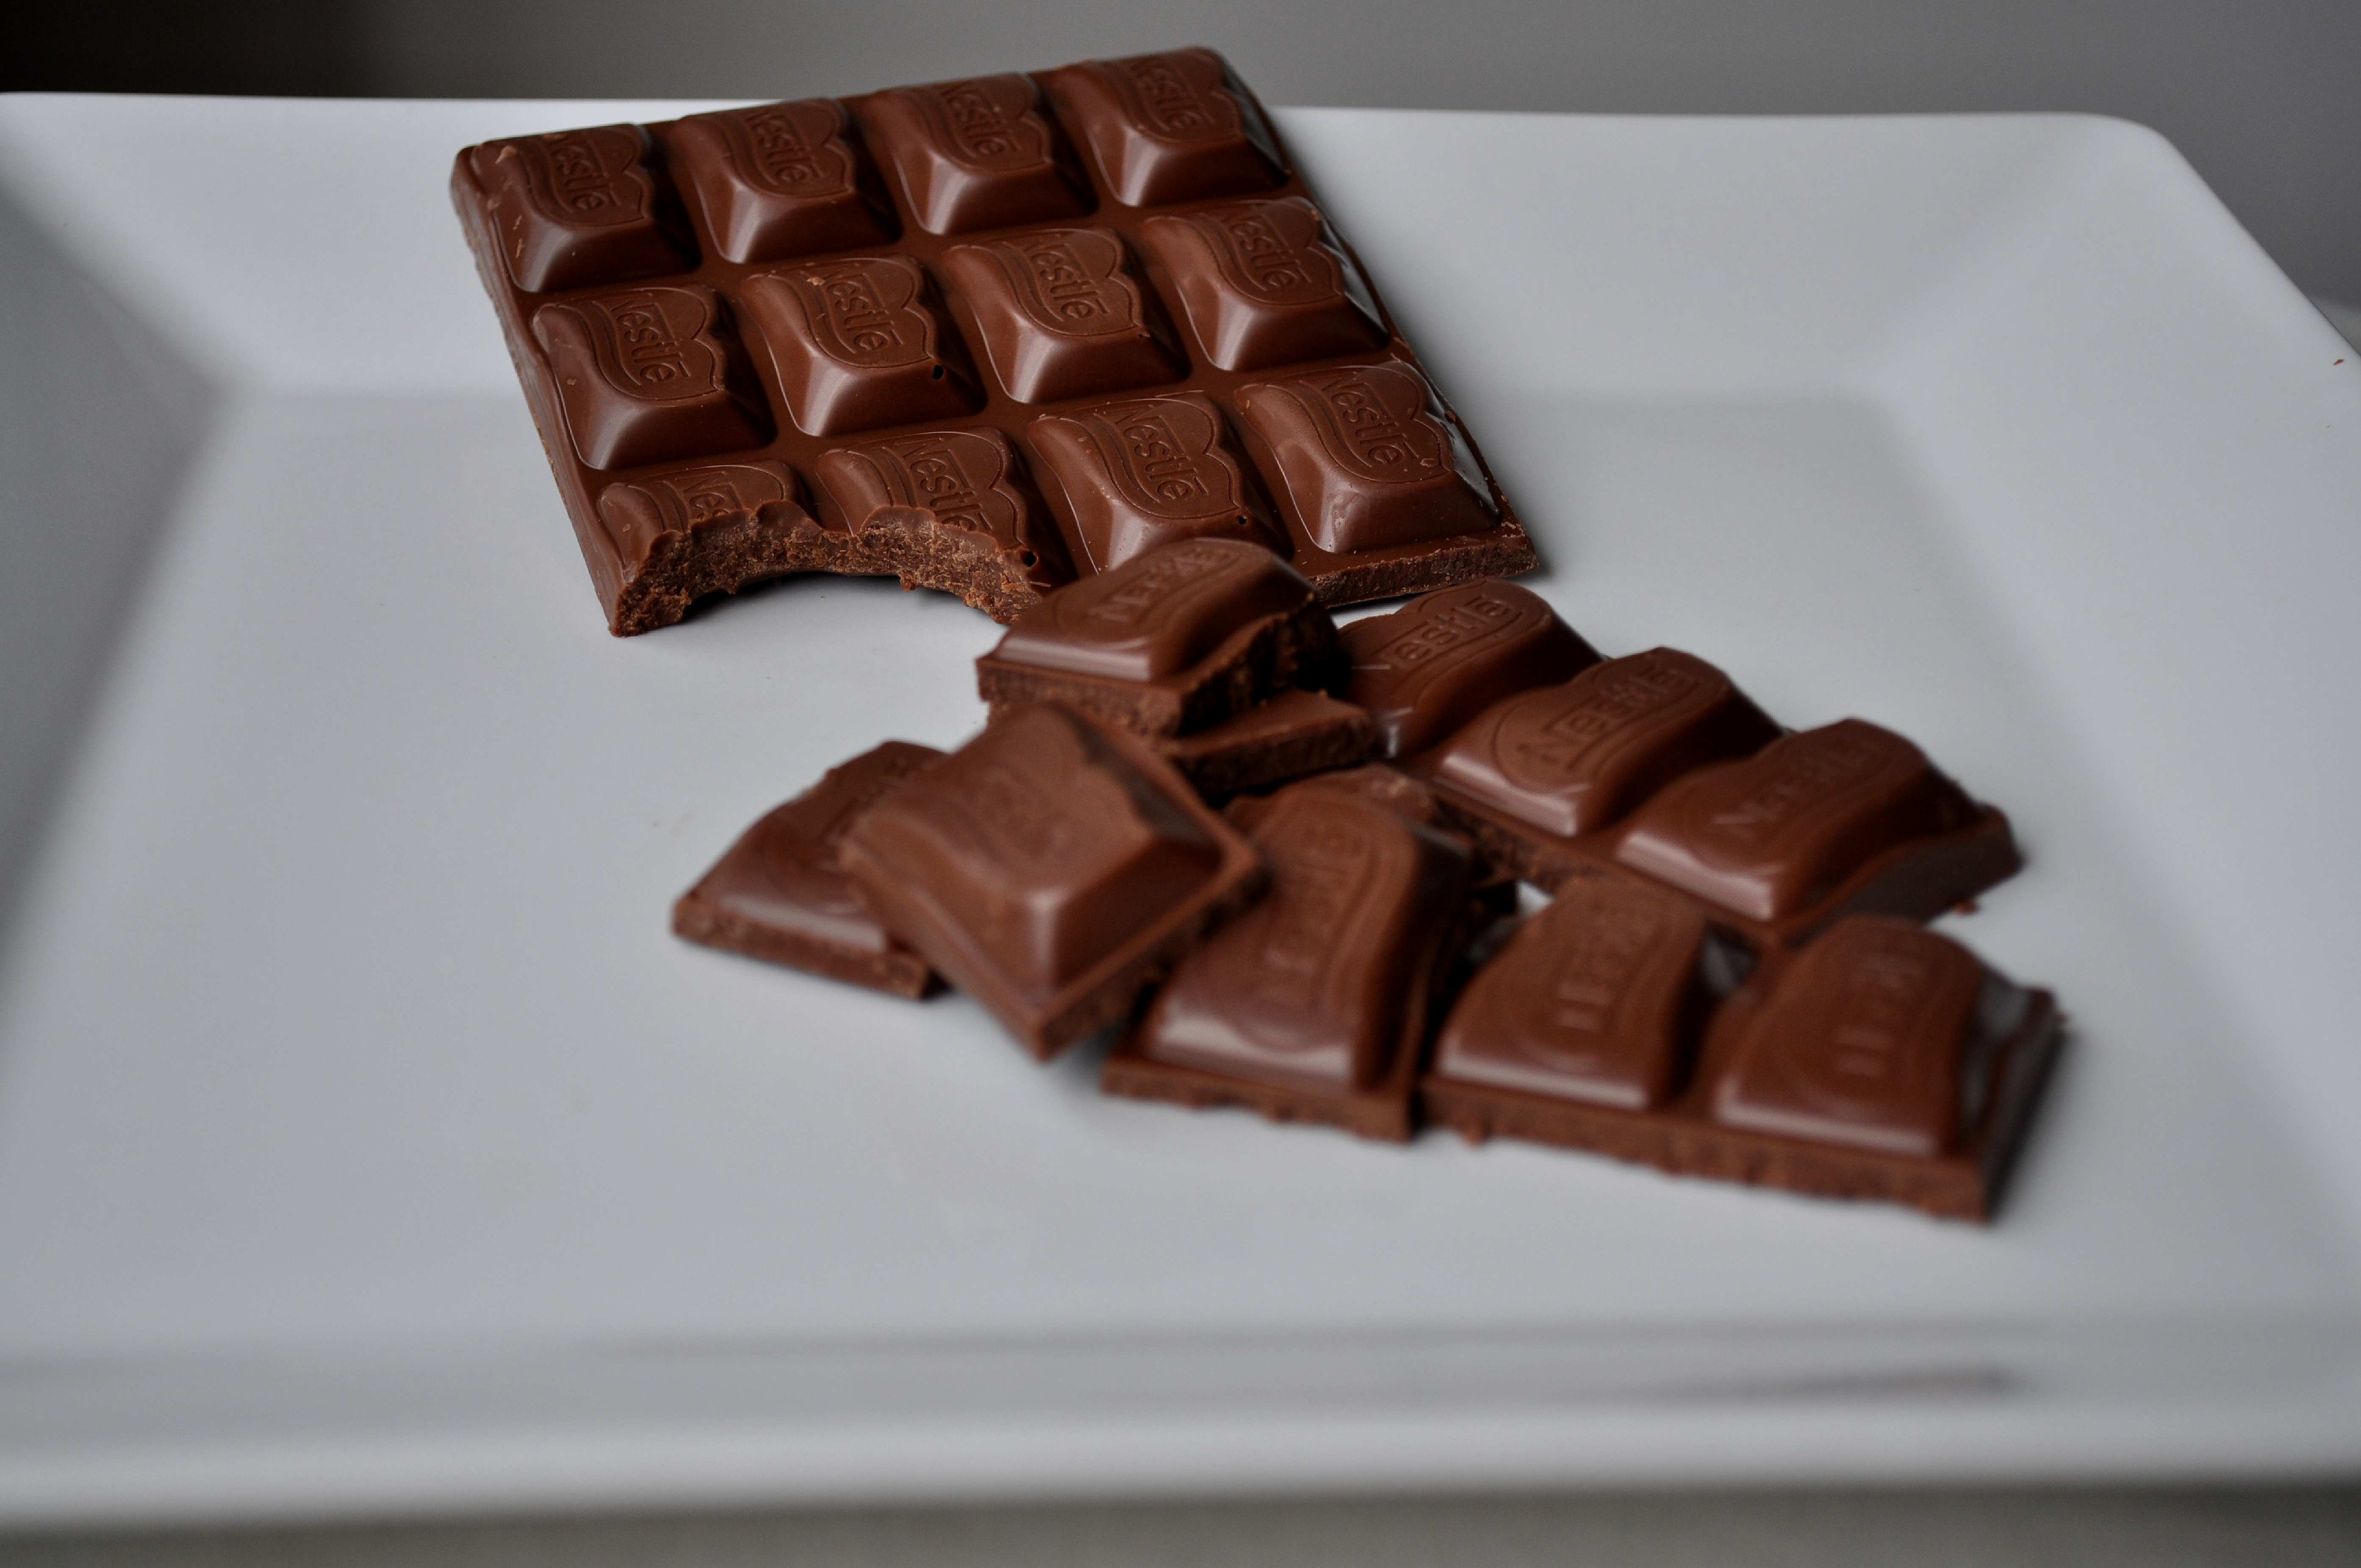 Добавить шоколад какая большая. Шоколад плиточный молочный. Плитка шоколада. Шоколадная плитка. Молочный шоколад плитка.